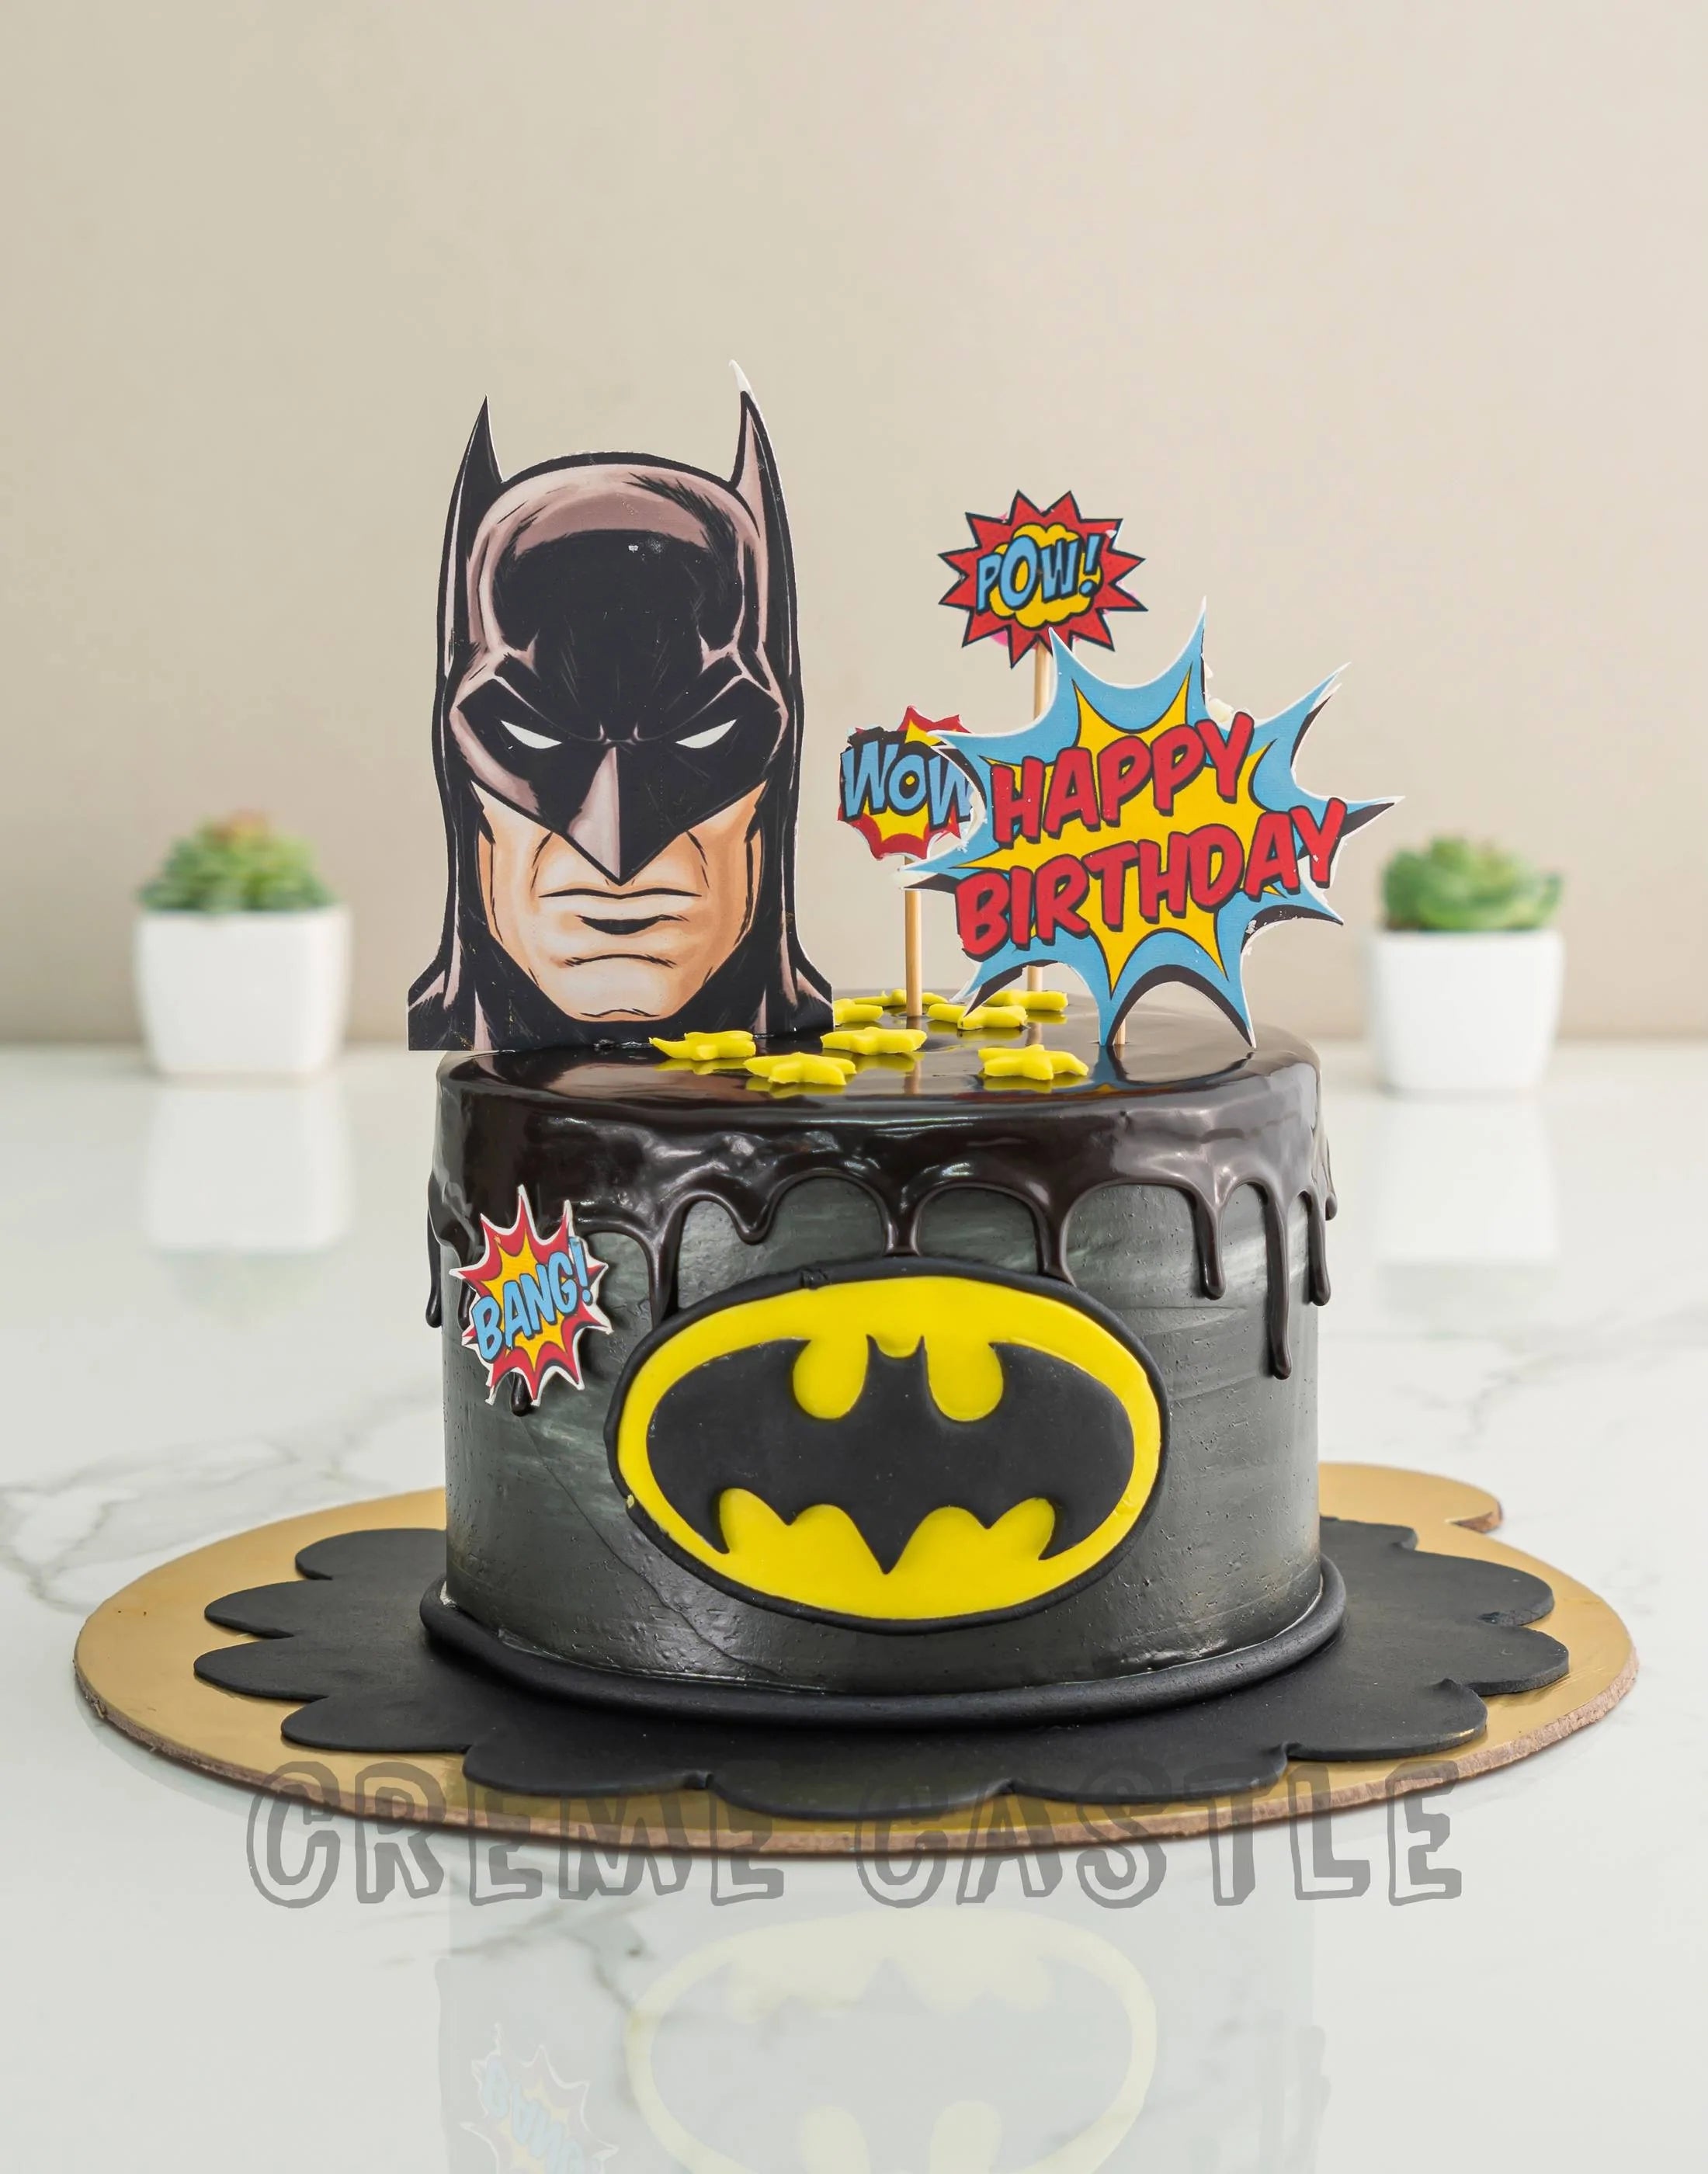 Superhero Theme Cakes - LallanTop Cake Shop